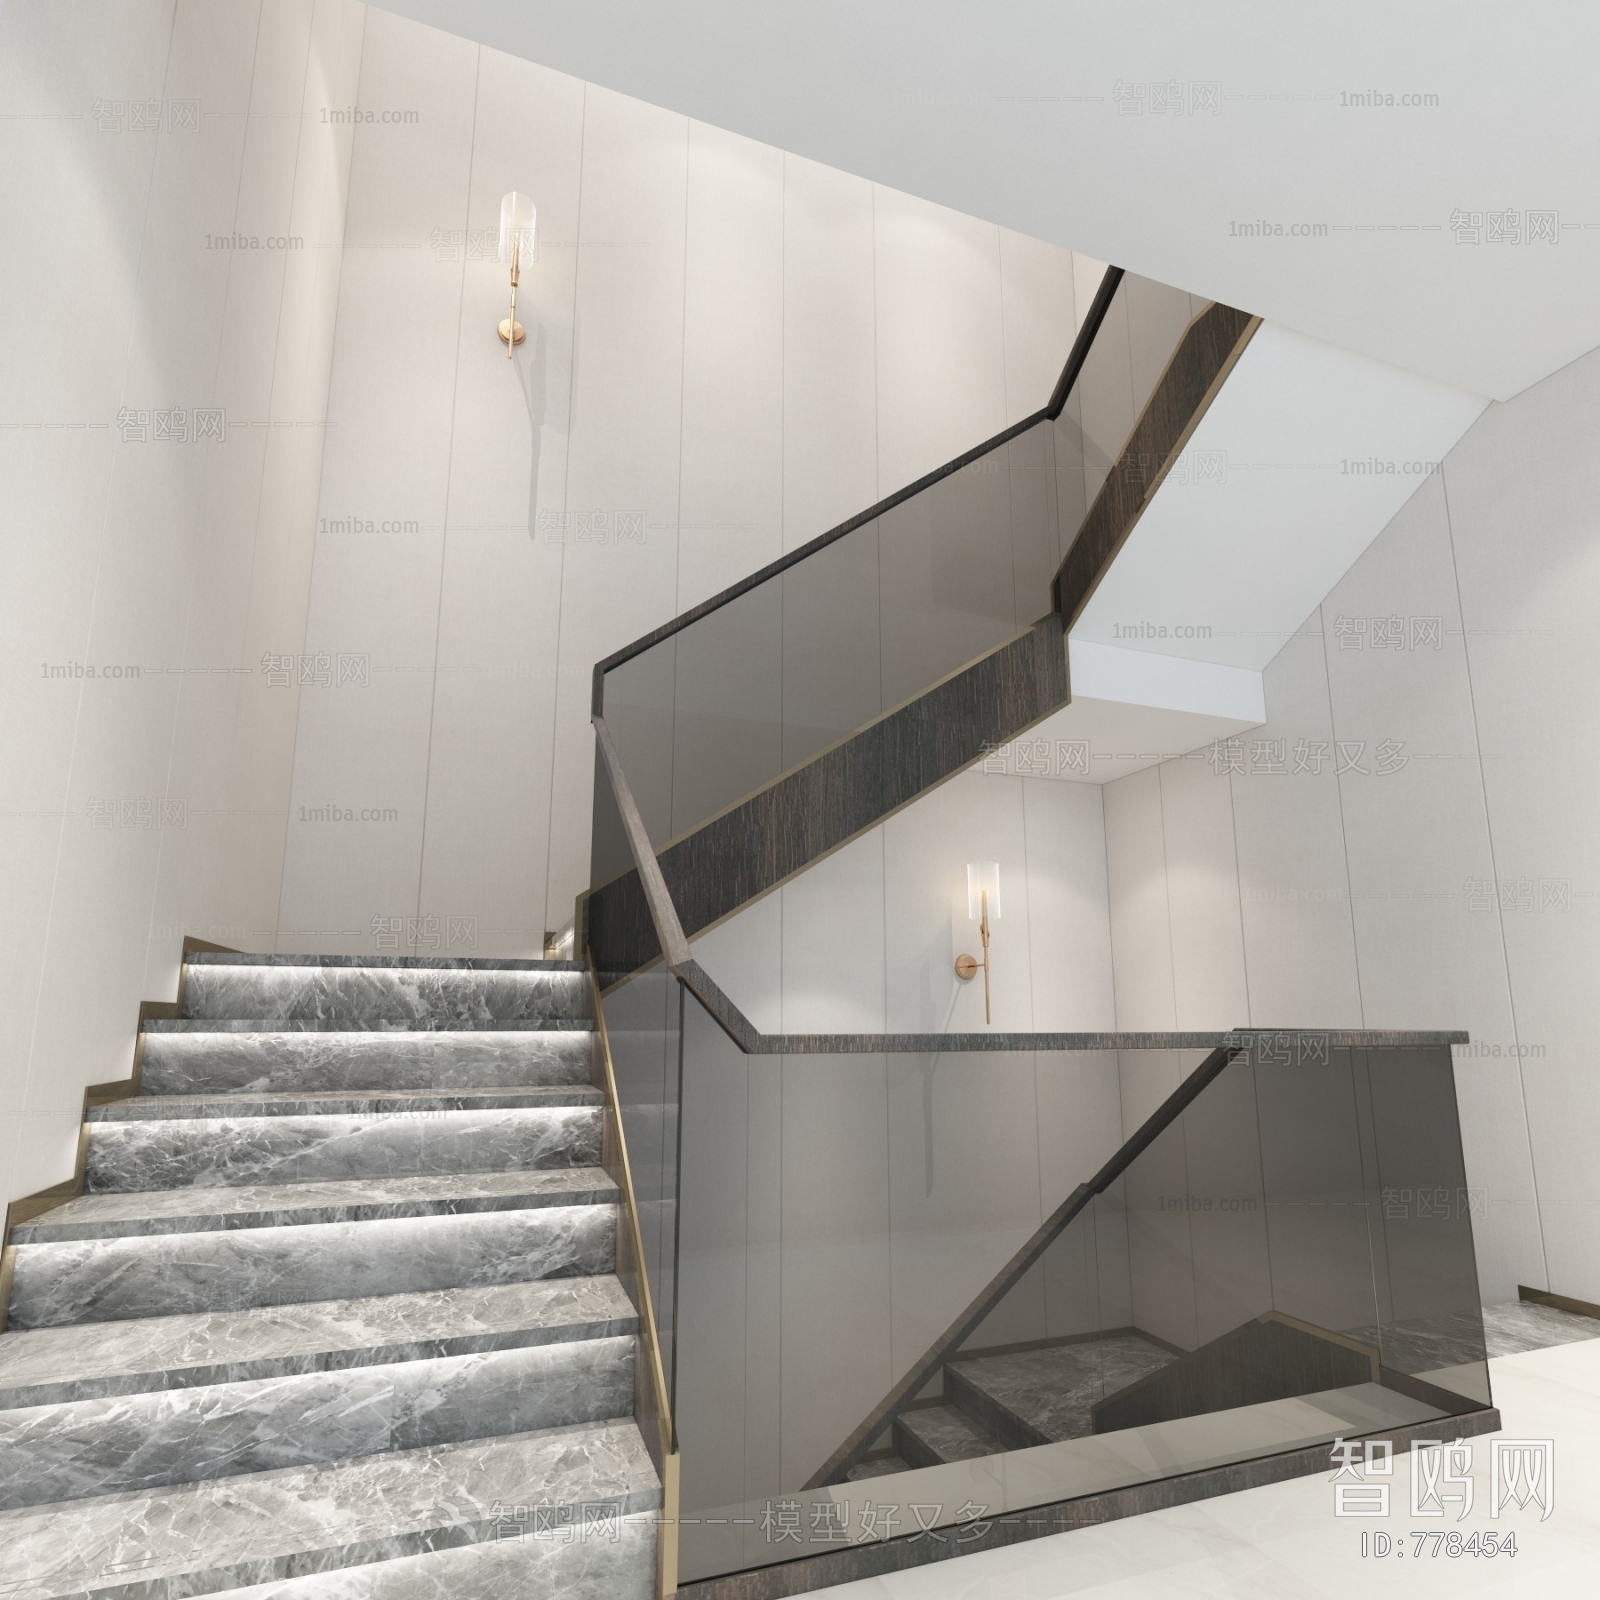 Modern Stairwell